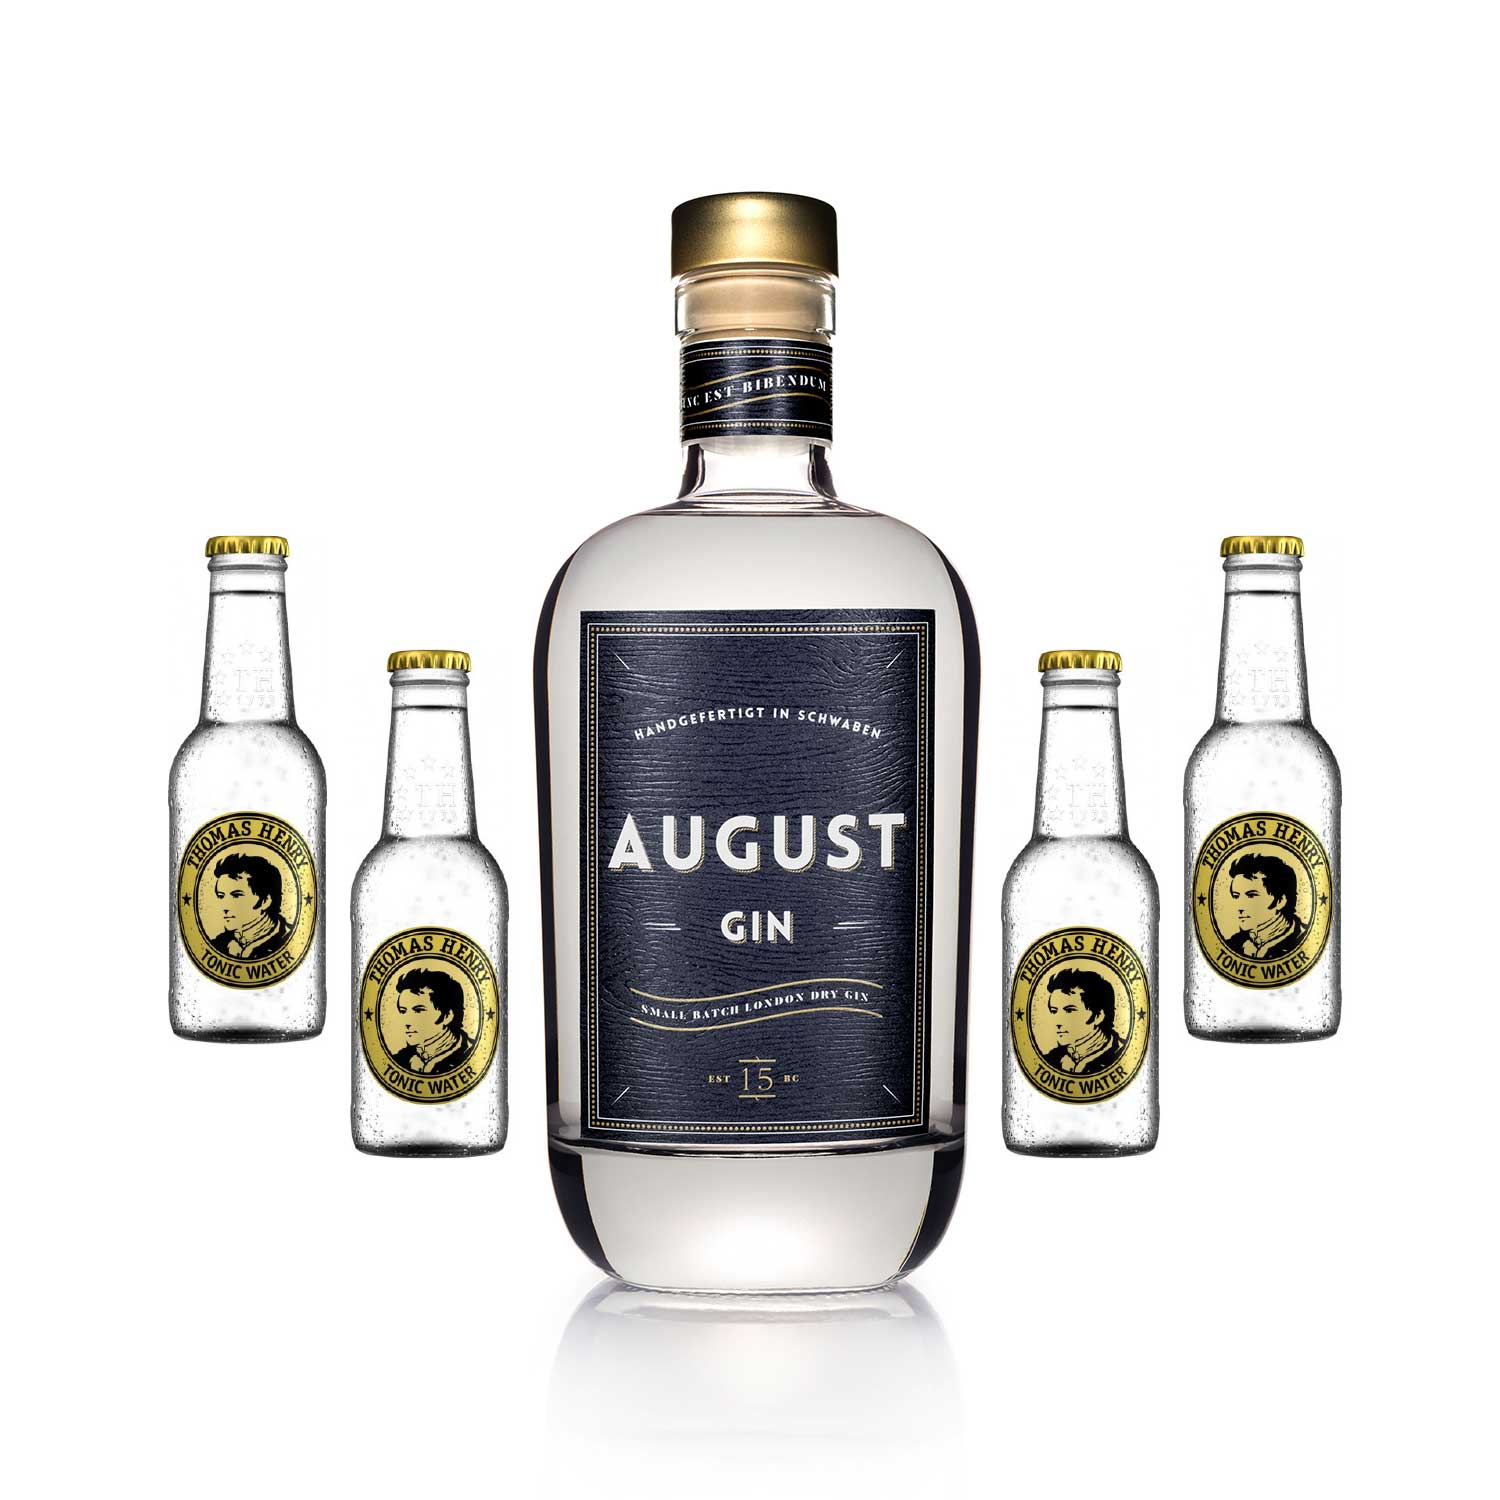 Augusta gin - Unser TOP-Favorit 